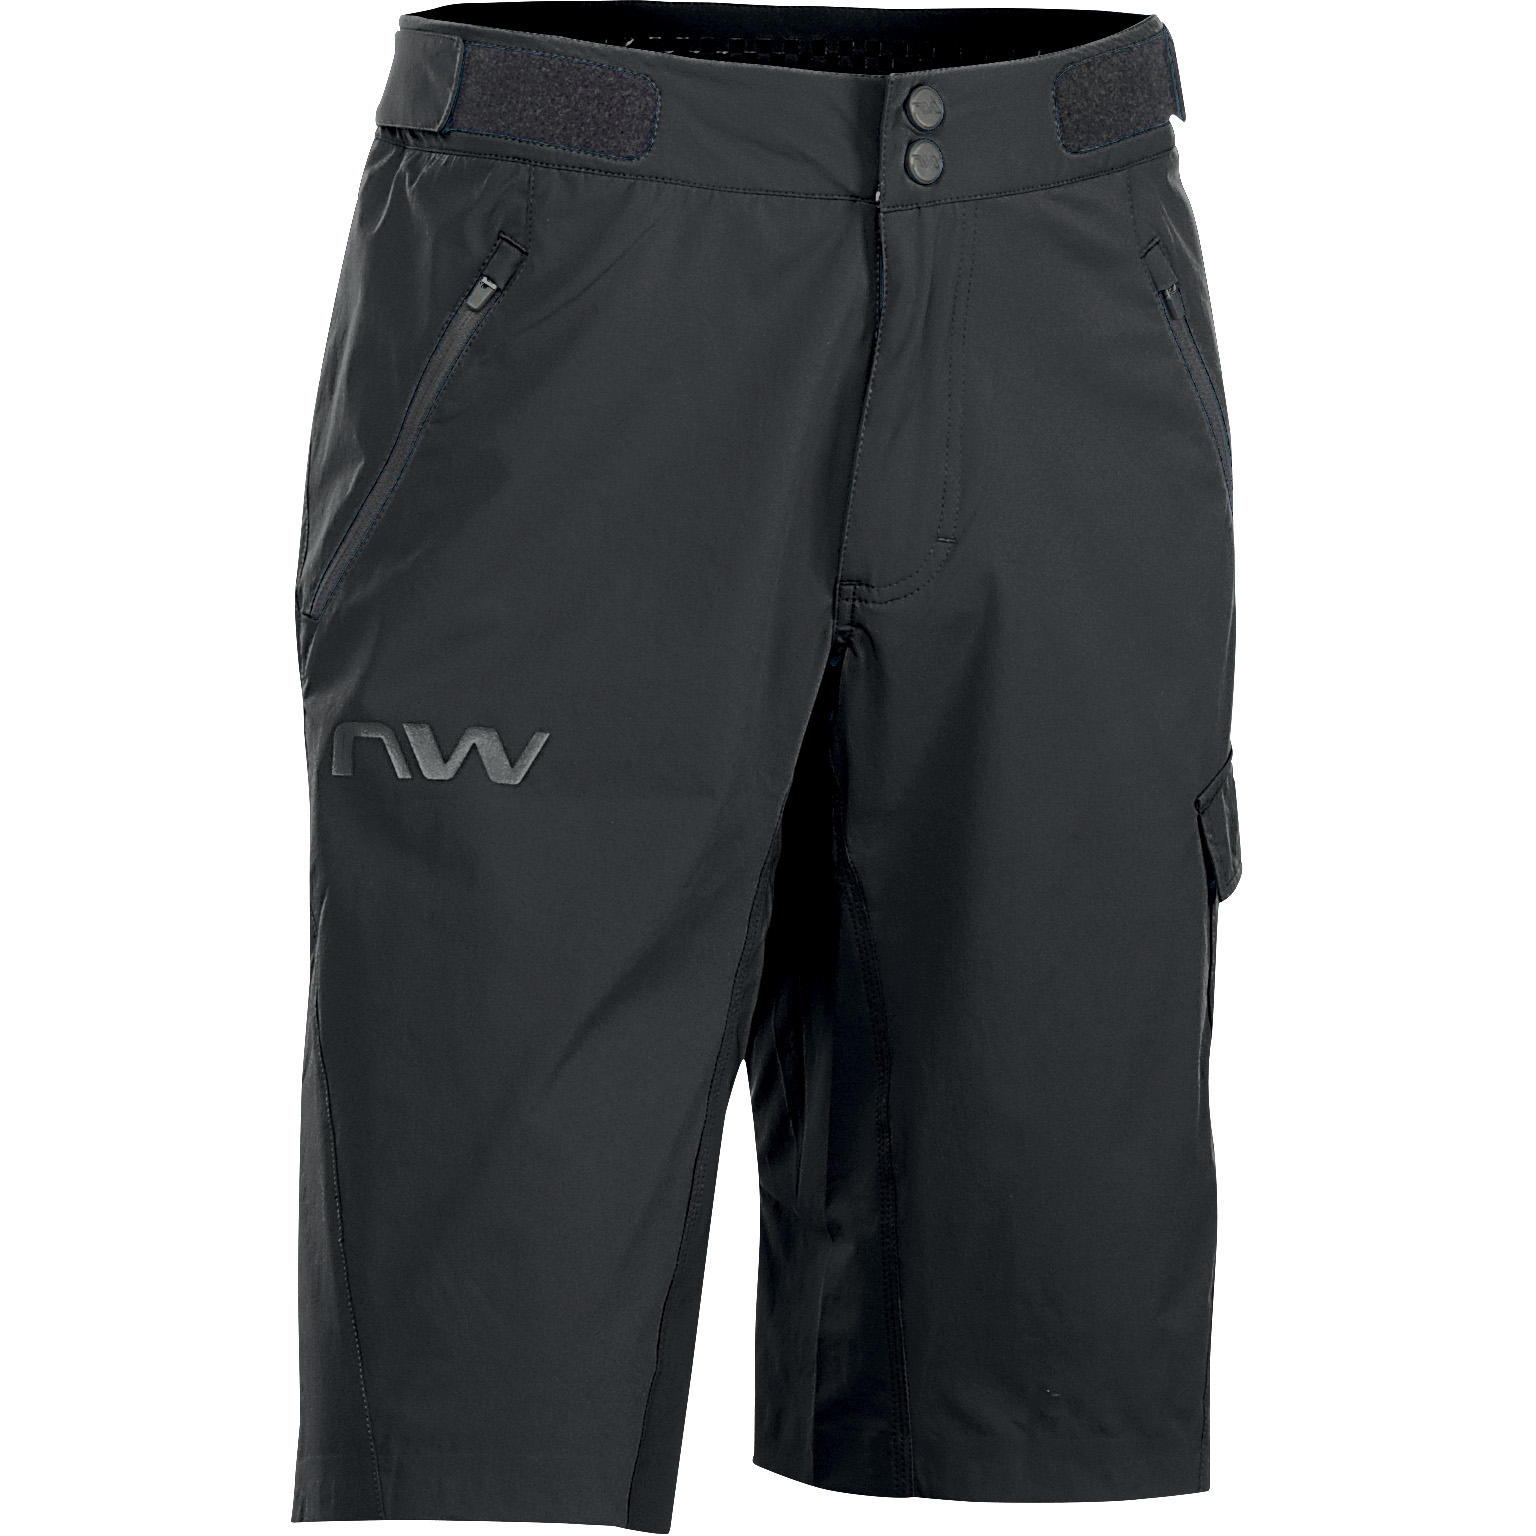 Produktbild von Northwave Edge Baggy Shorts - schwarz 10